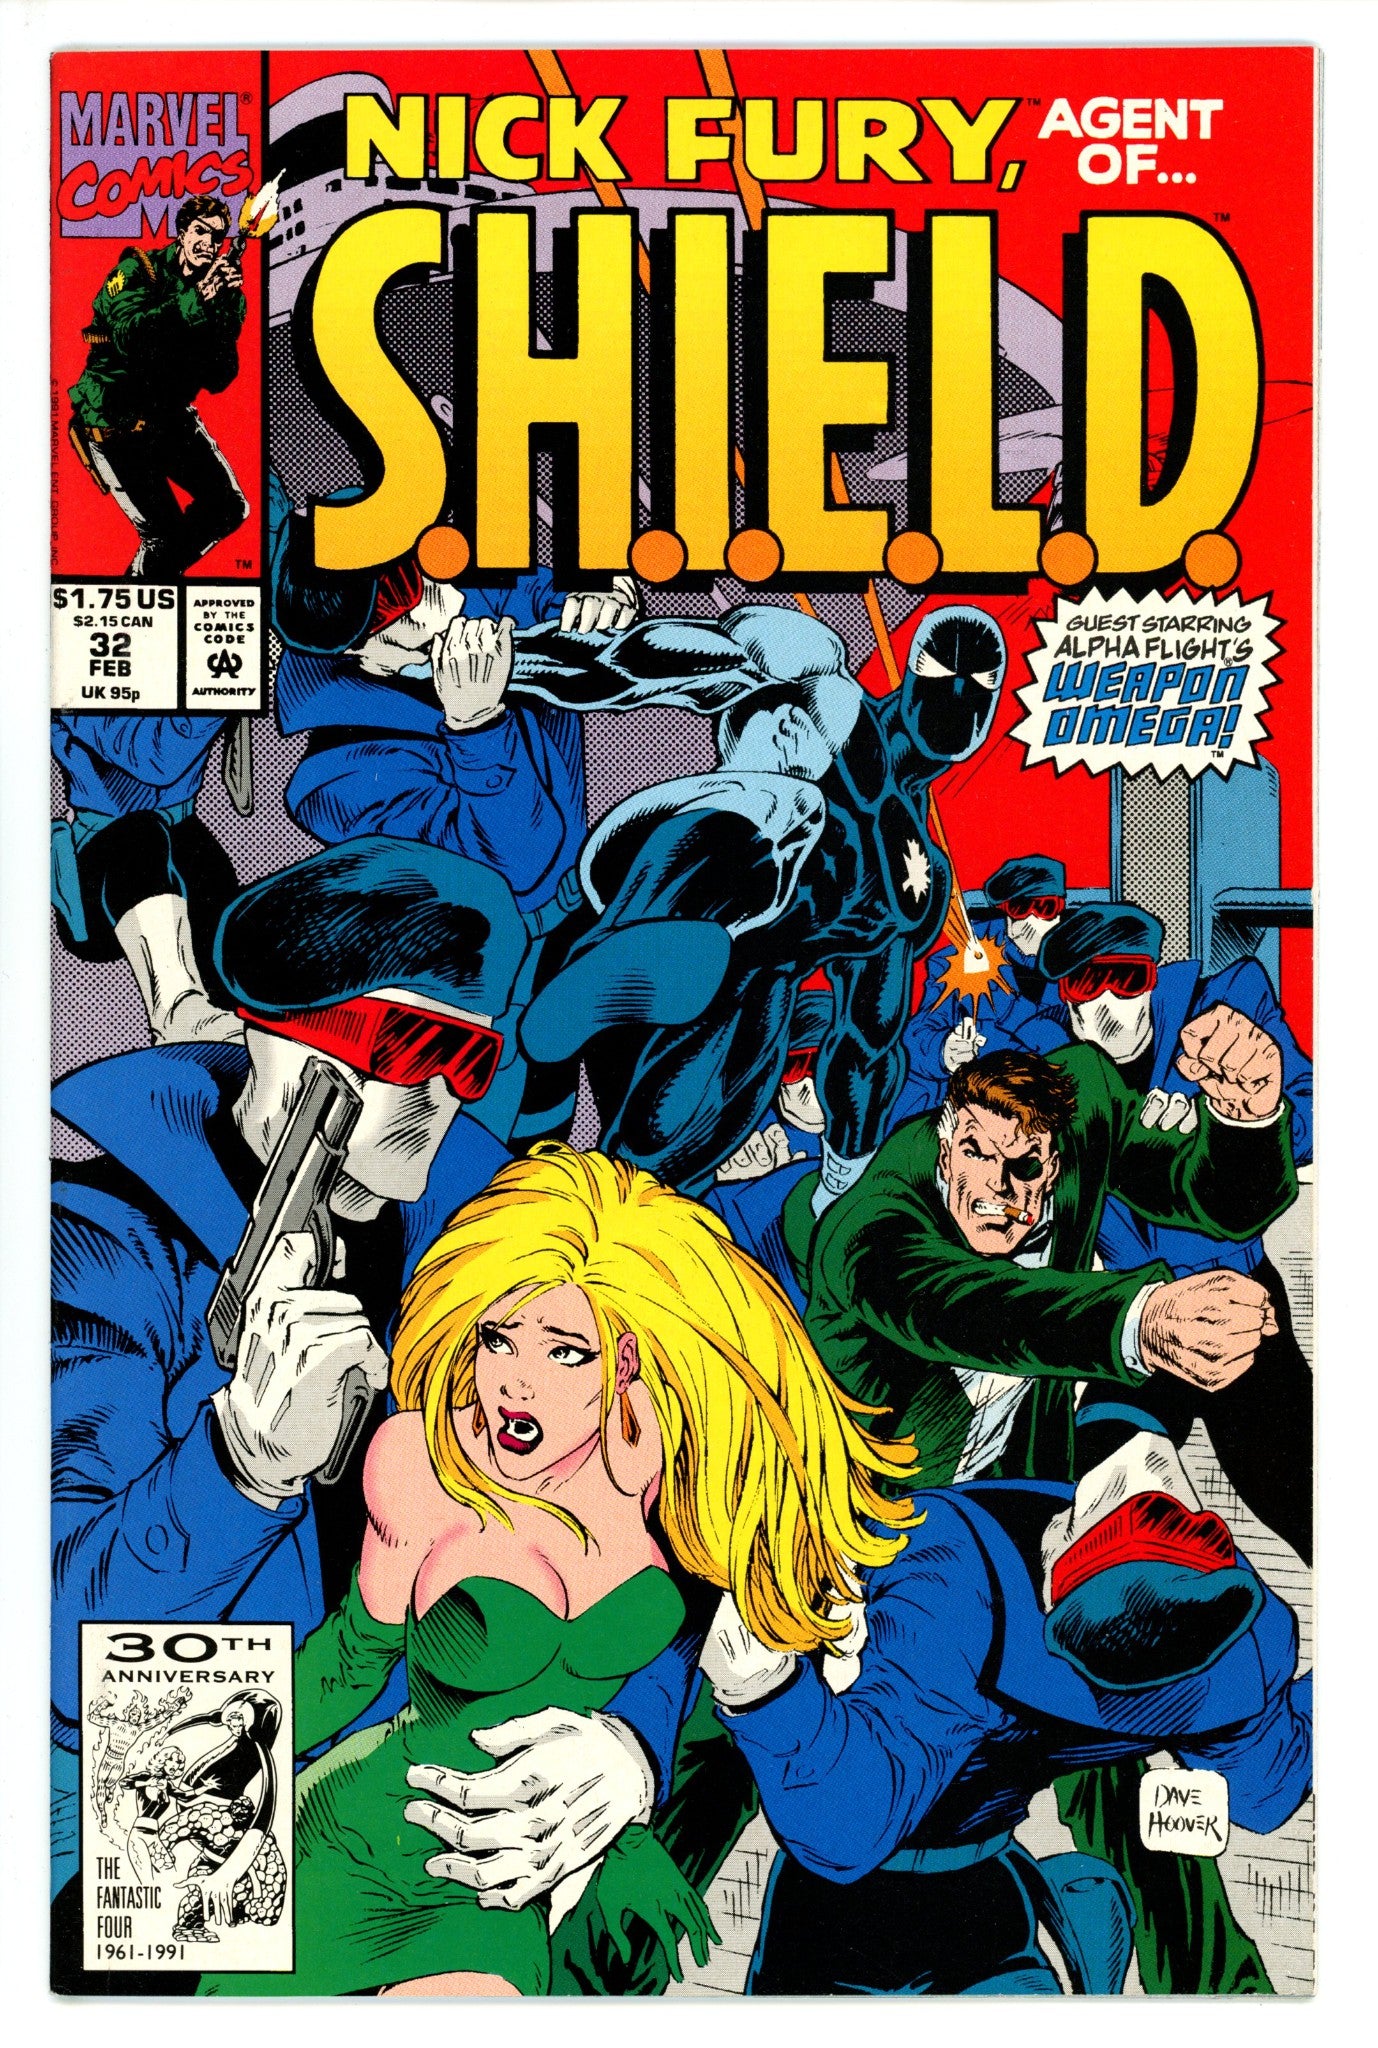 Nick Fury, Agent of S.H.I.E.L.D. Vol 4 32 (1991)